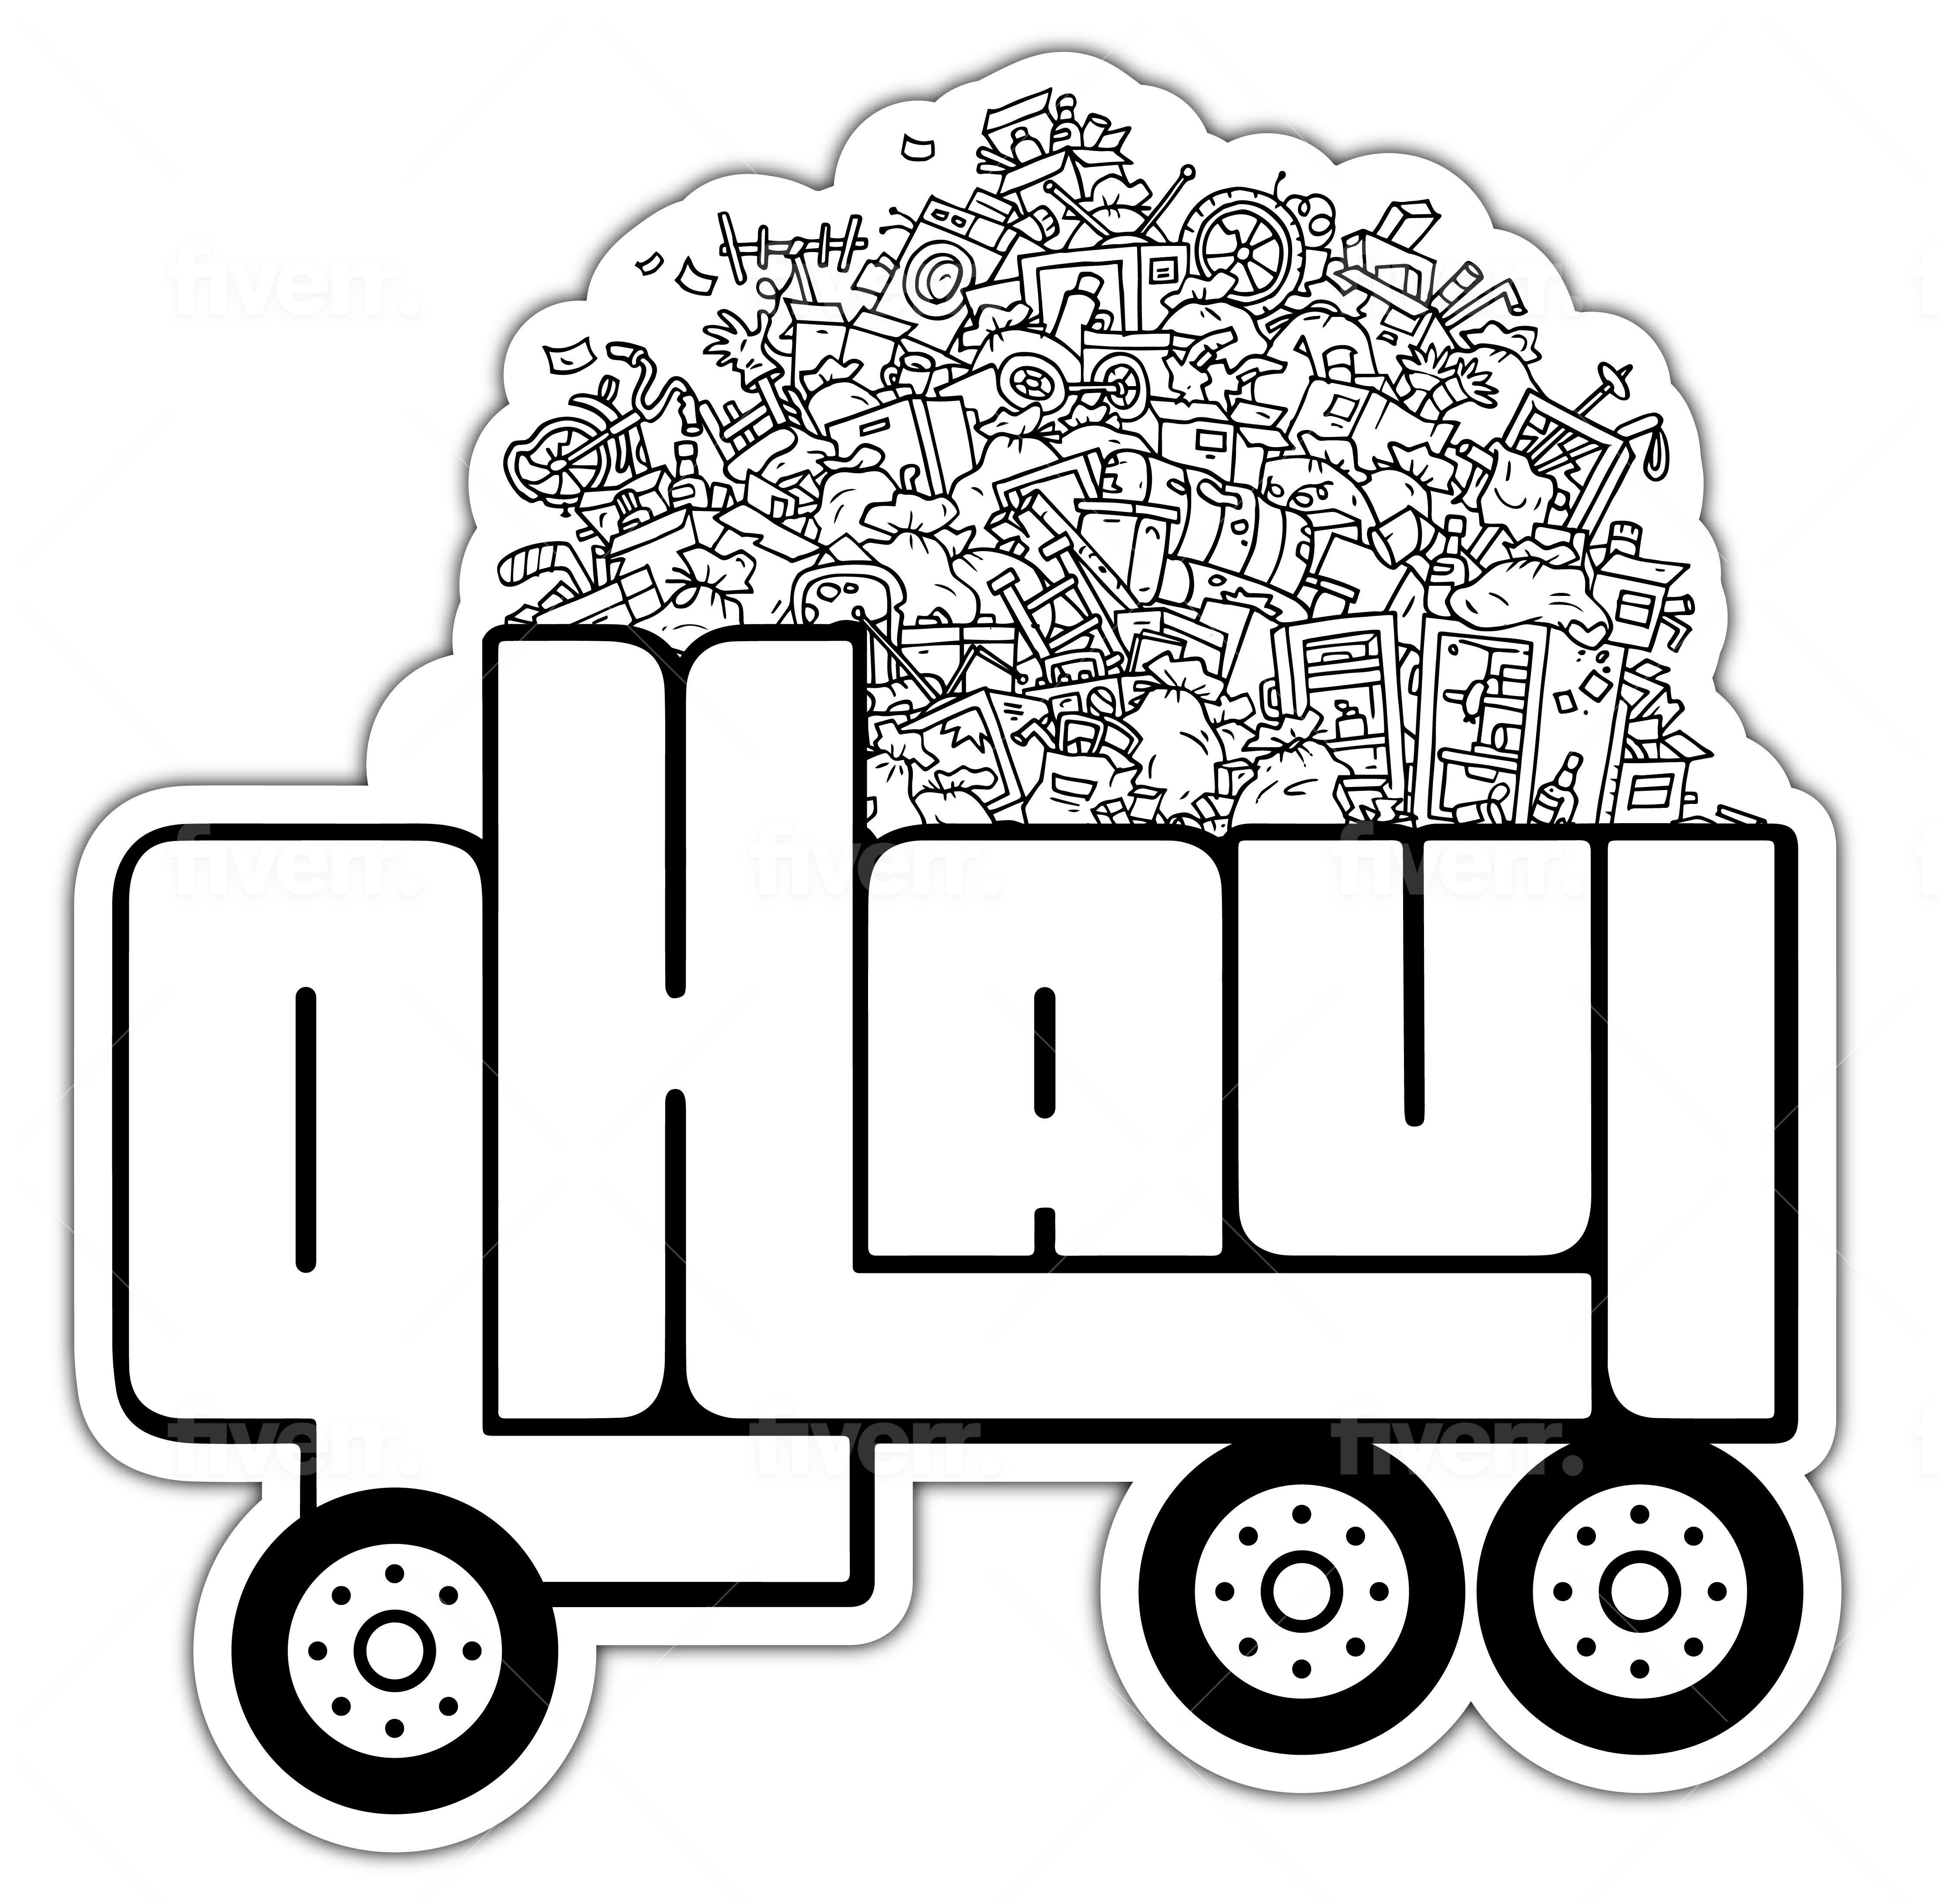 QHaul LLC Logo